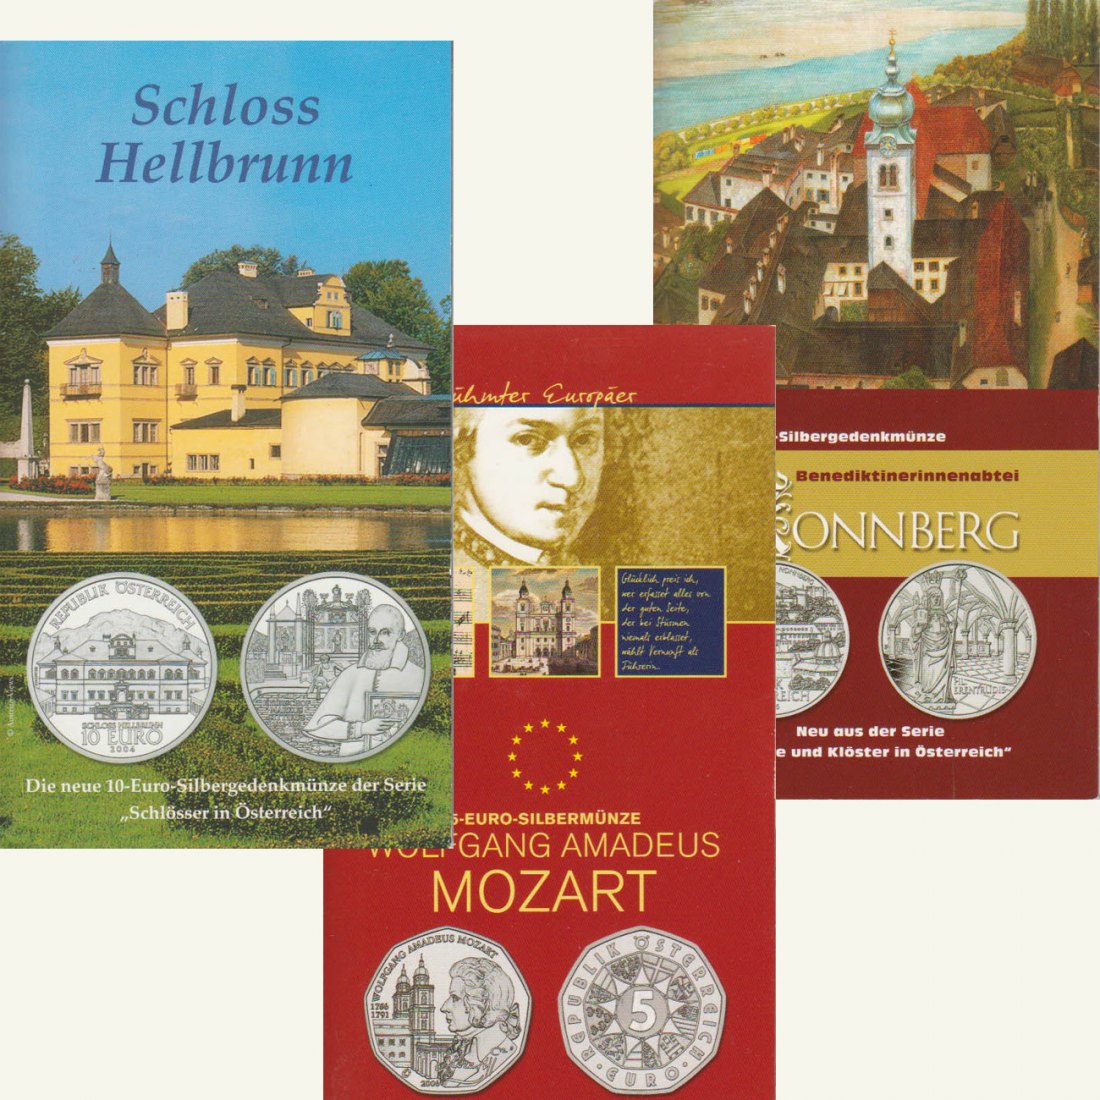  Lot 25-Euro-Silbermünzen Österreich *Hellbrunn + Nonnenberg + Mozart* 2004-2006 *hgh*   